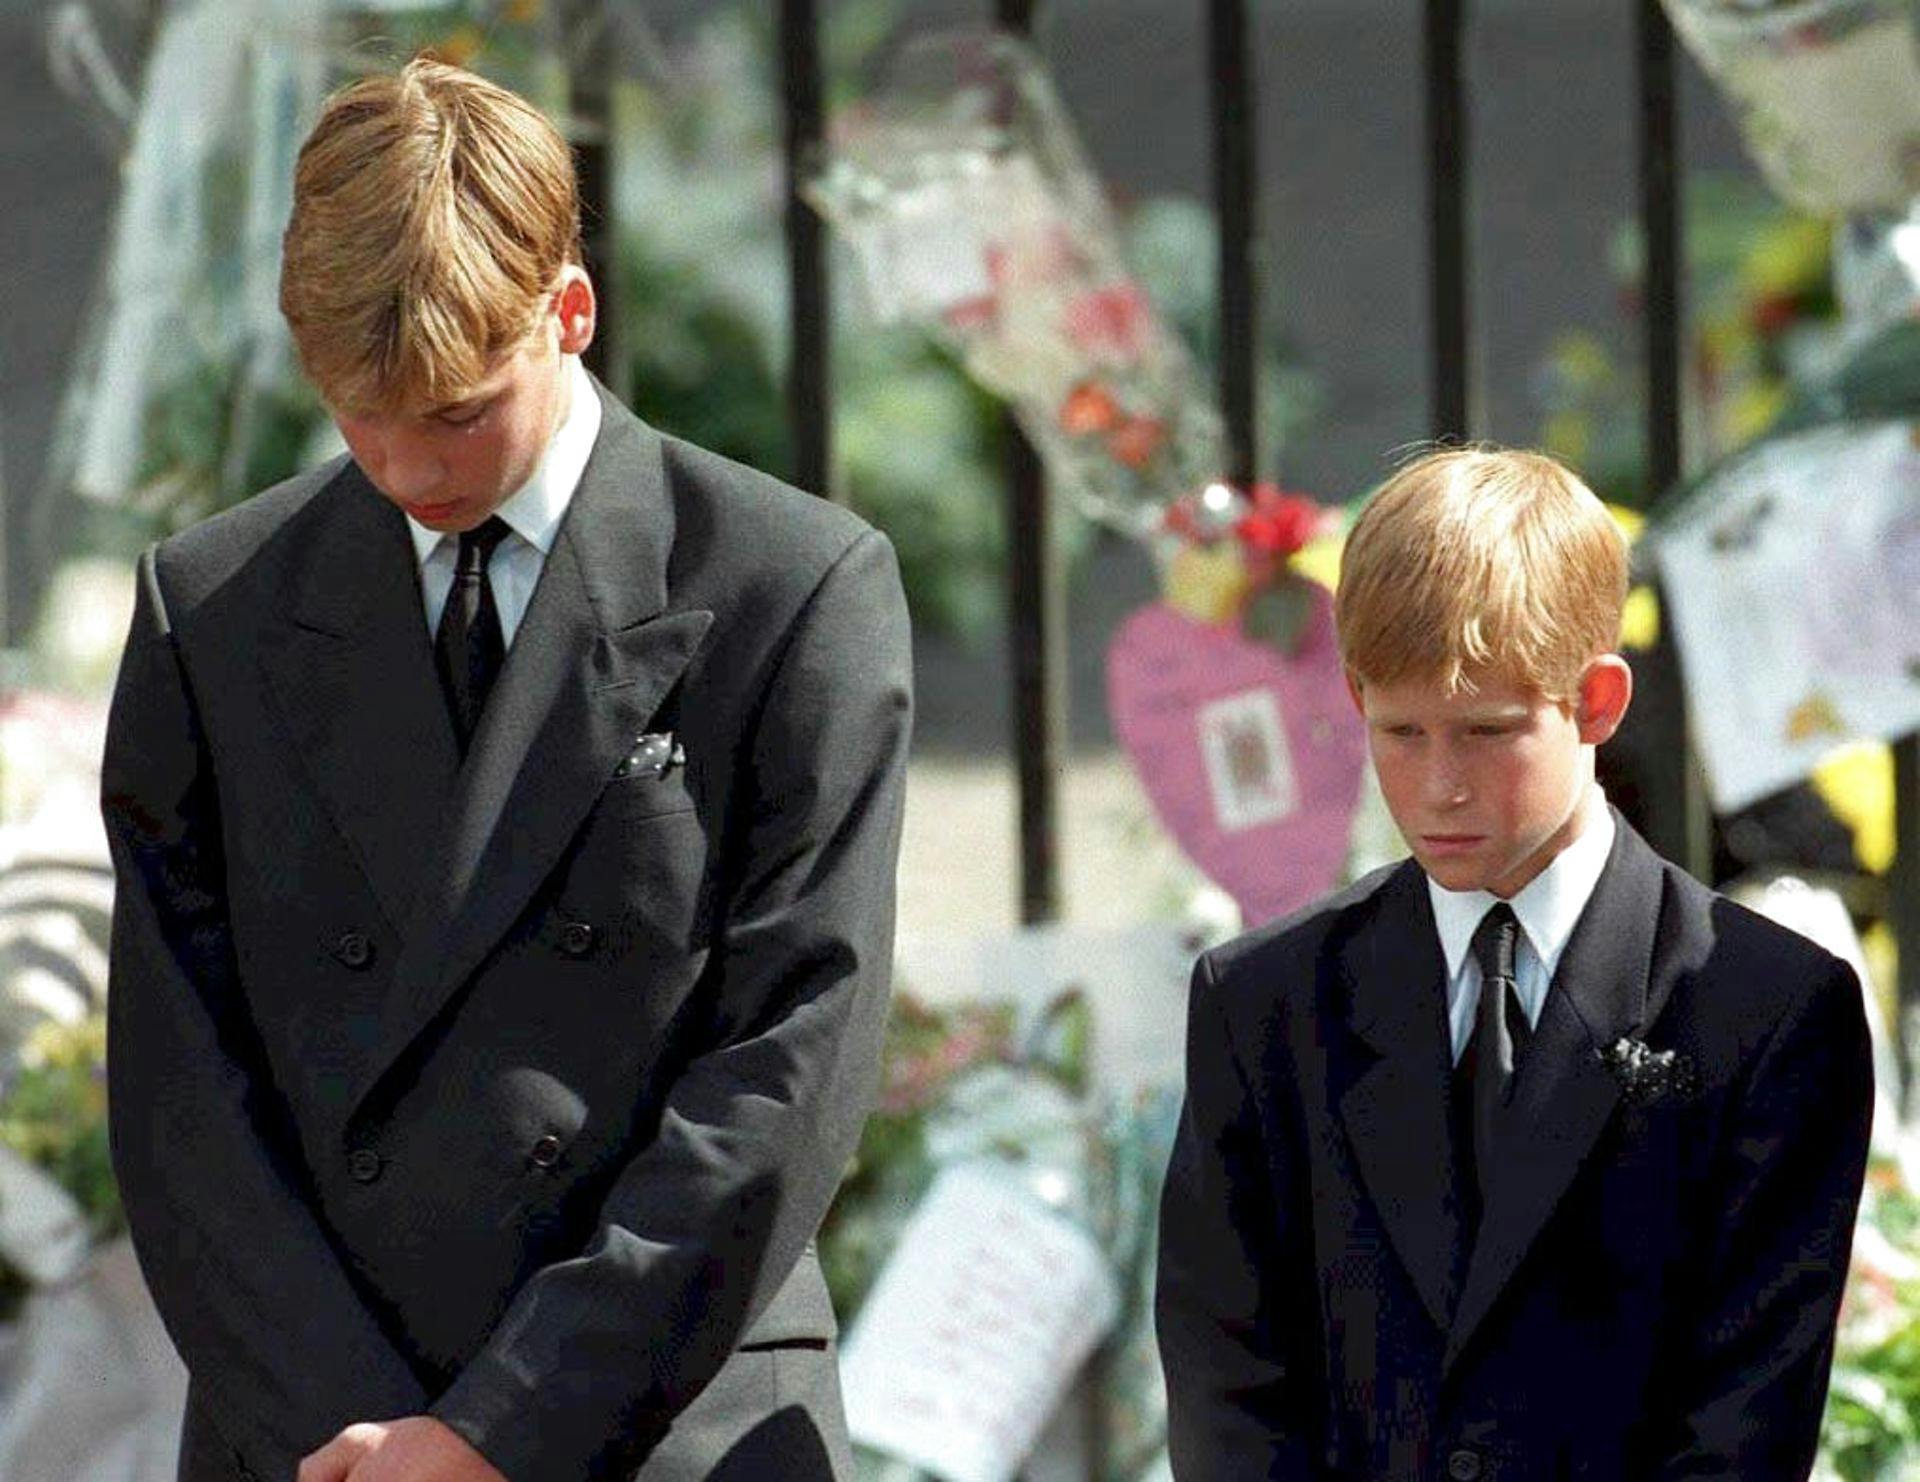 For 25 år siden oplevede disse to brødre et alt for tidligt og stort tab.